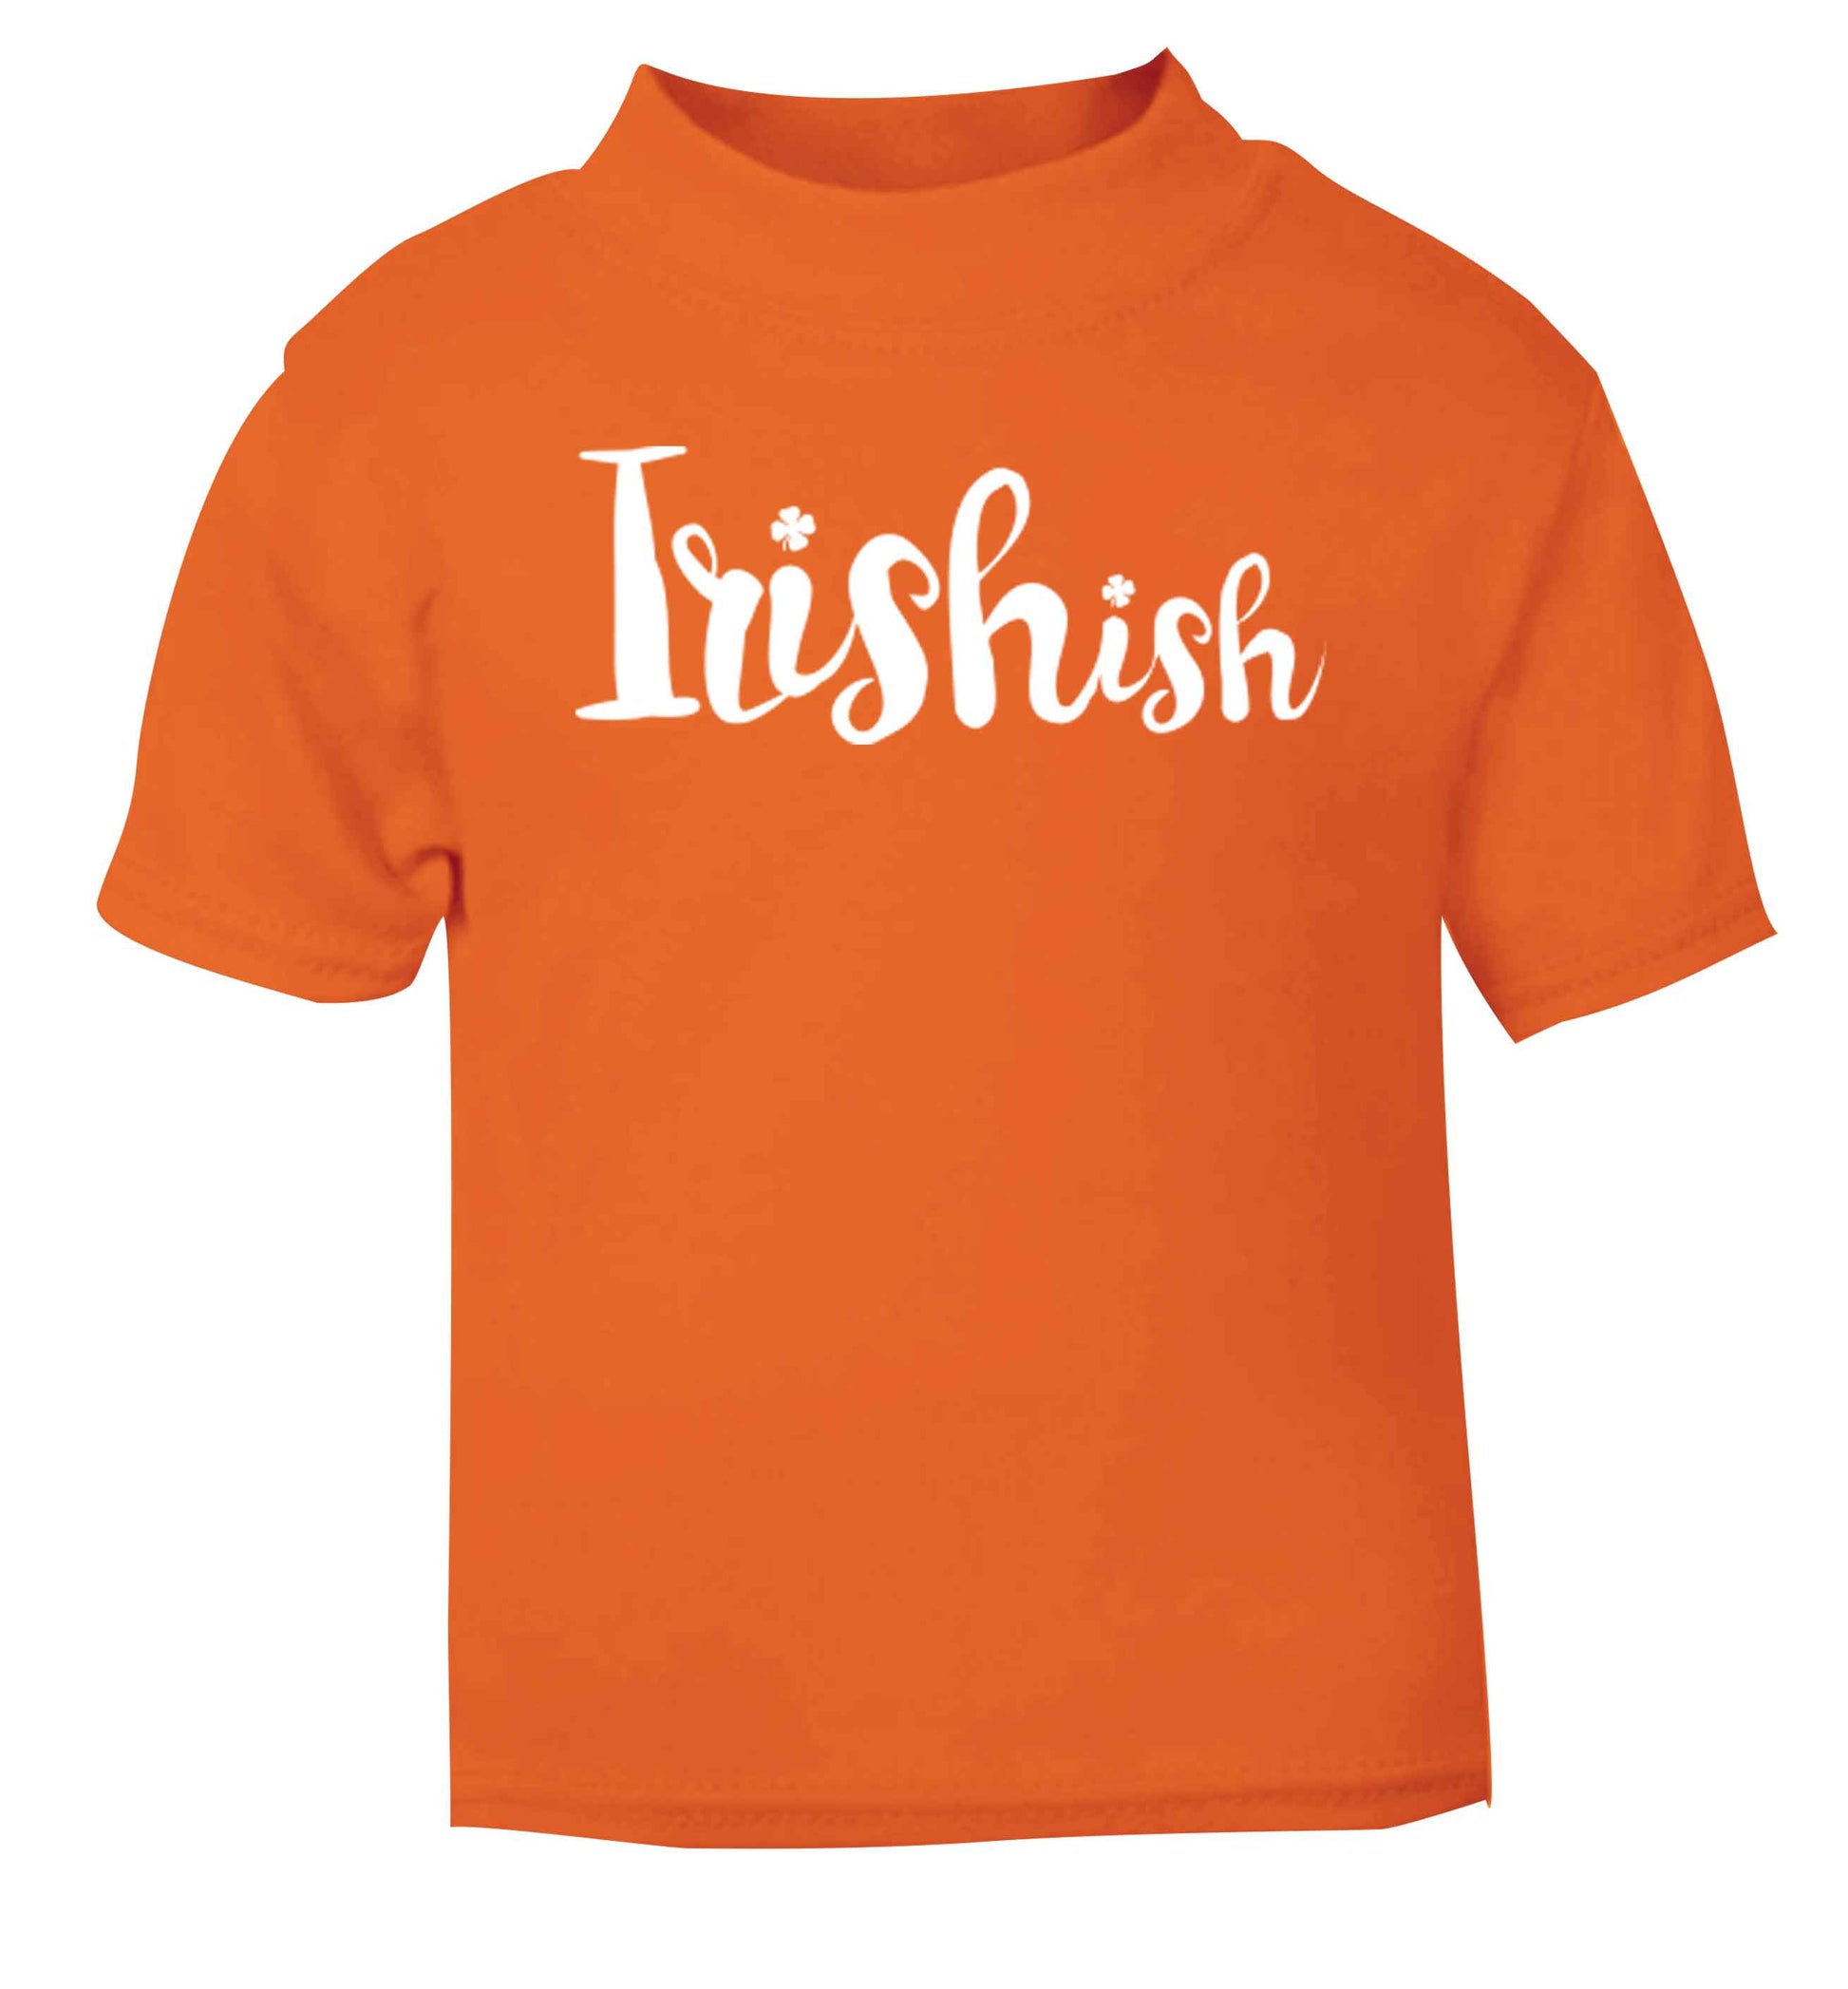 Irishish orange baby toddler Tshirt 2 Years